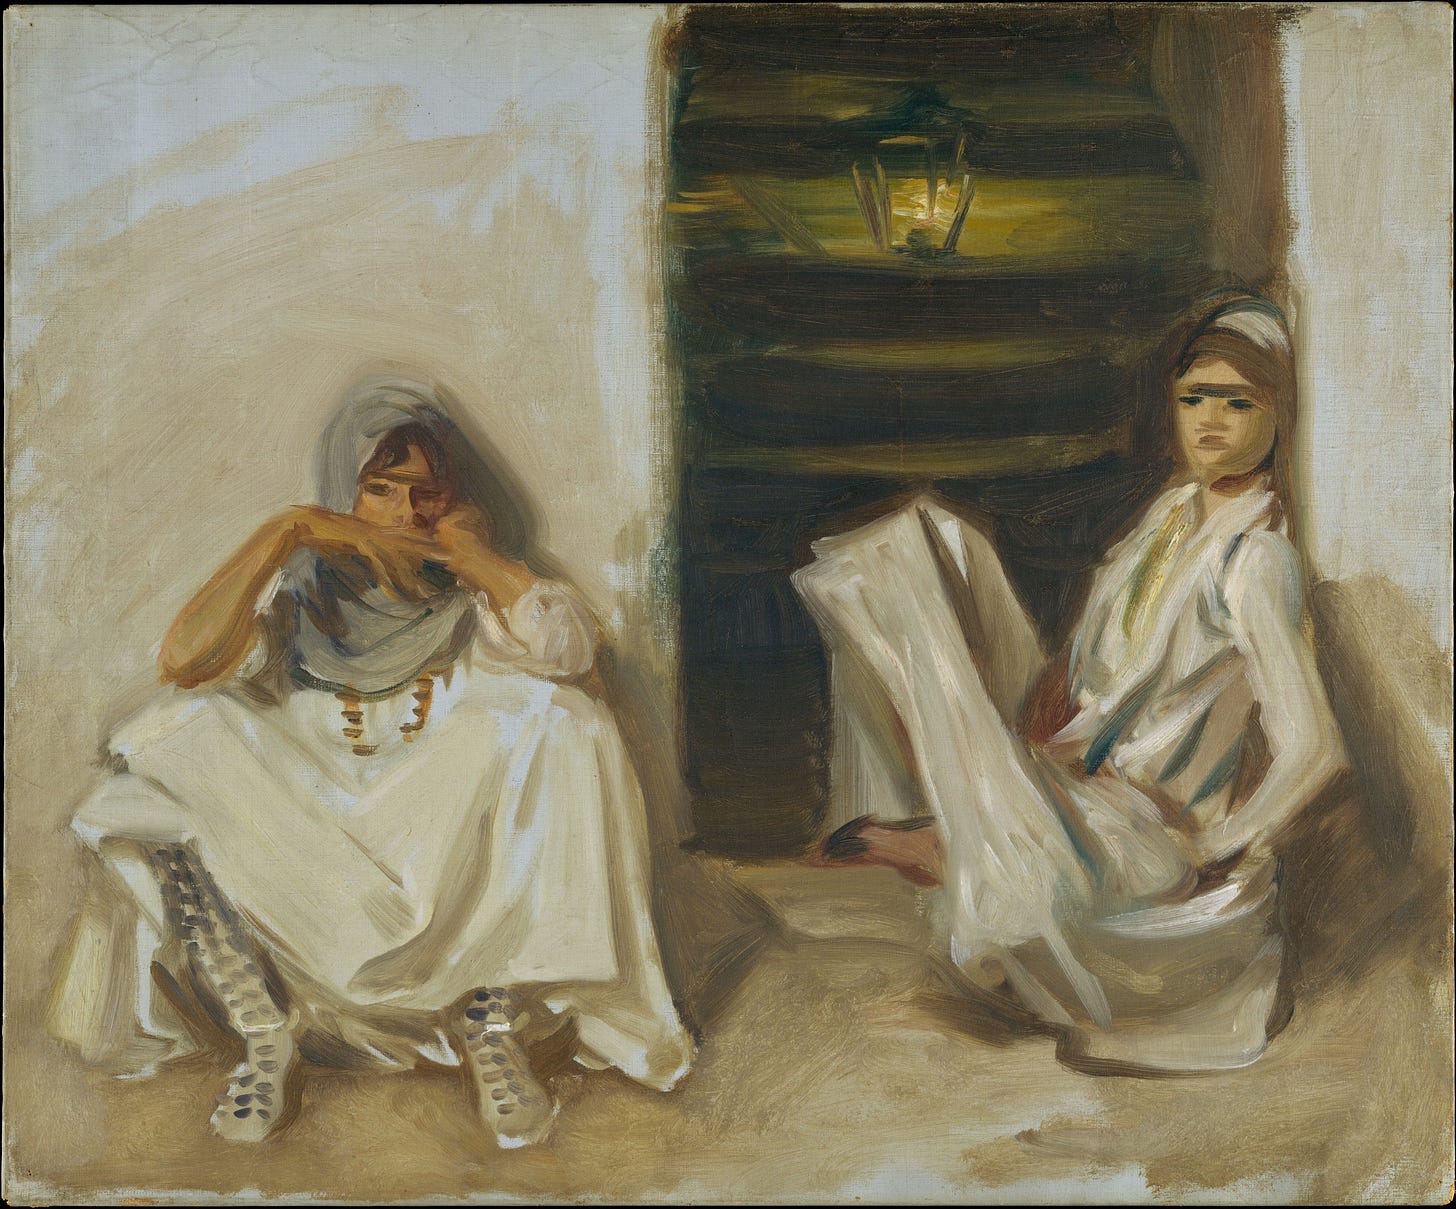 Two Arab Women (circa 1905)